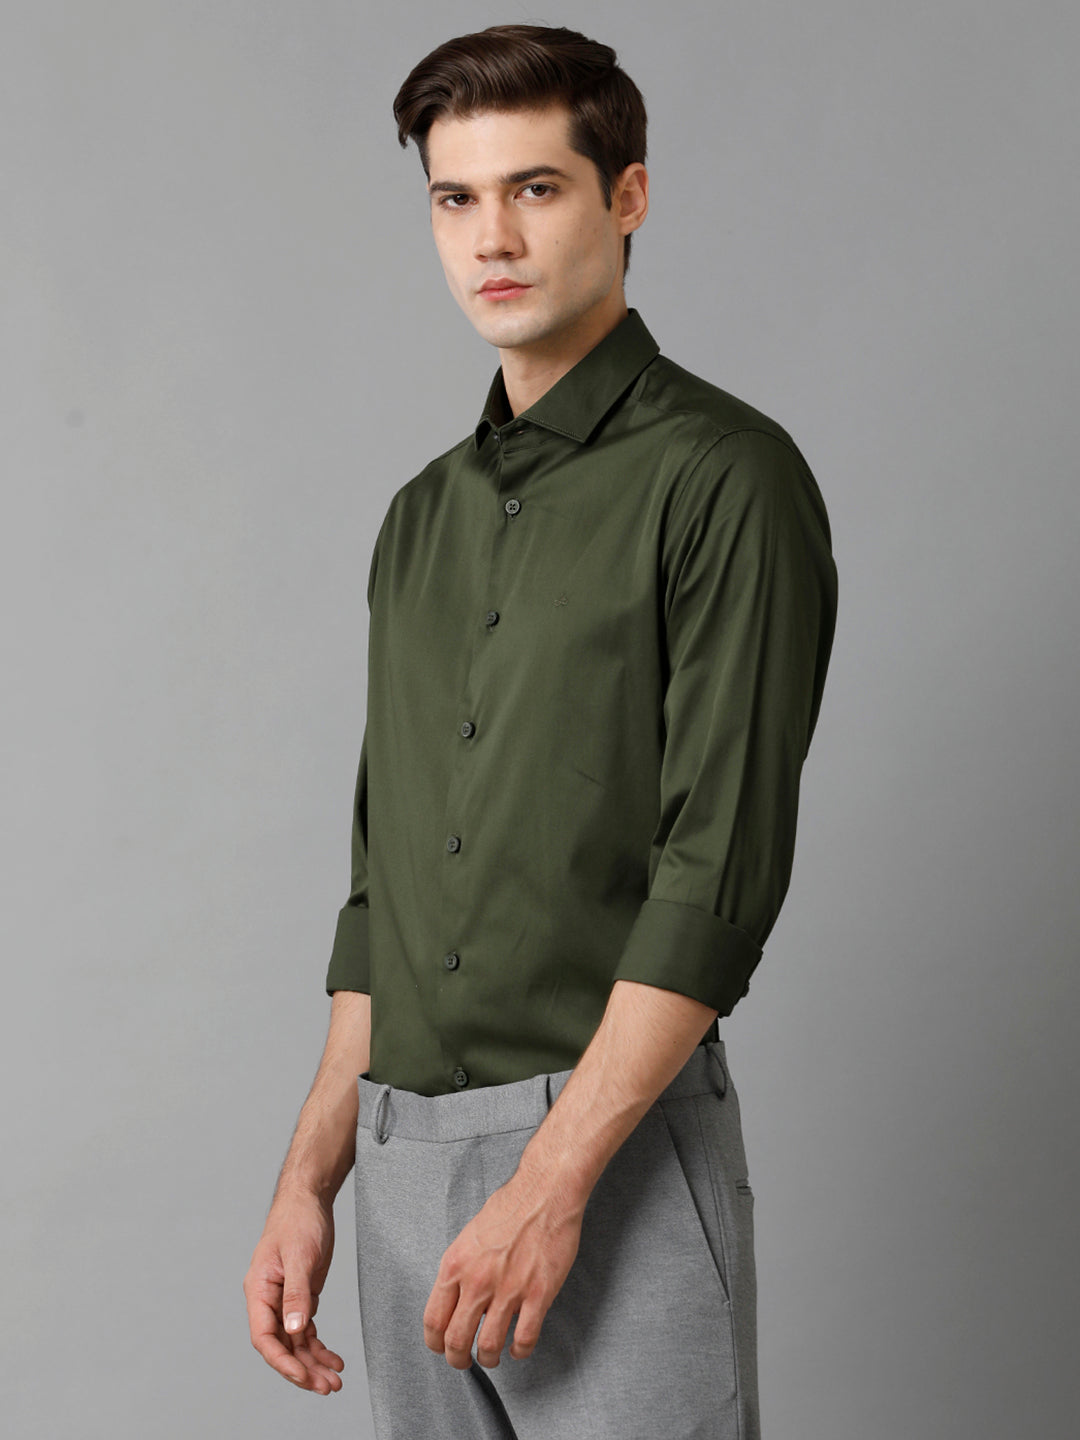 Aldeno Mens Regular Fit Solid Olive Green Formal Satin Shirt (SAUOL)